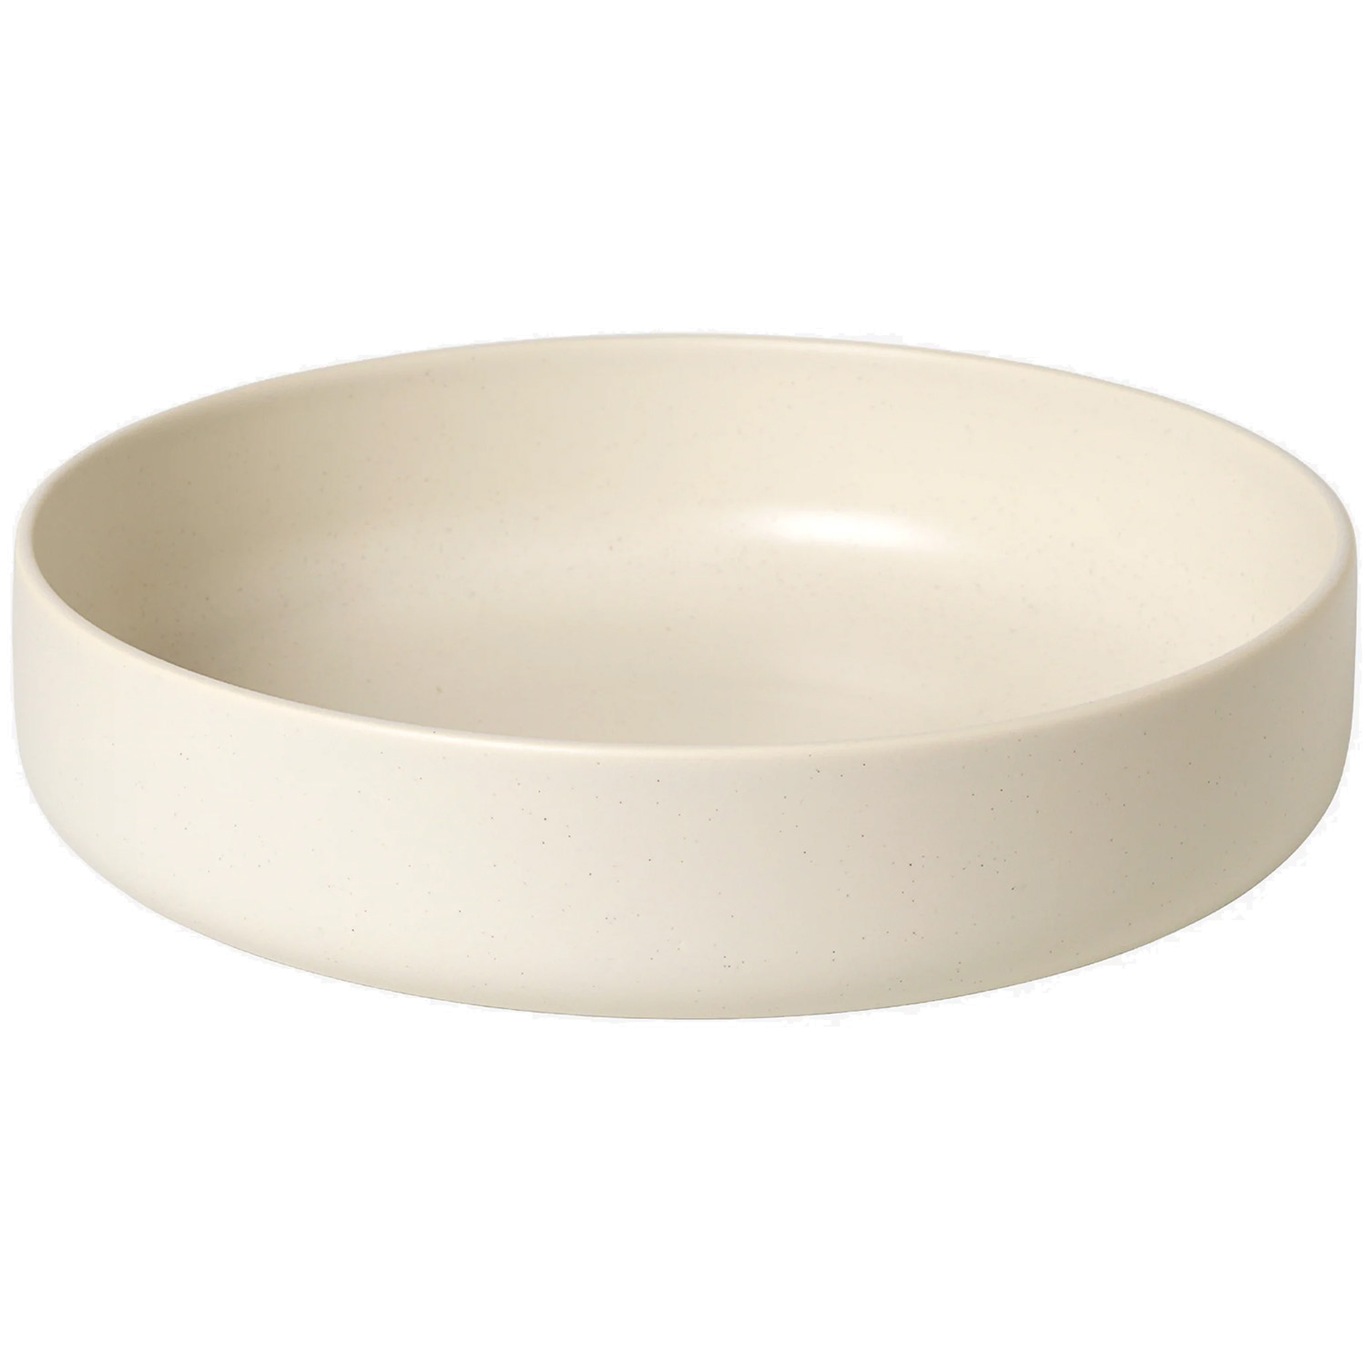 Ceramic Pisu Dienblad Ø30 cm, Vanilla White